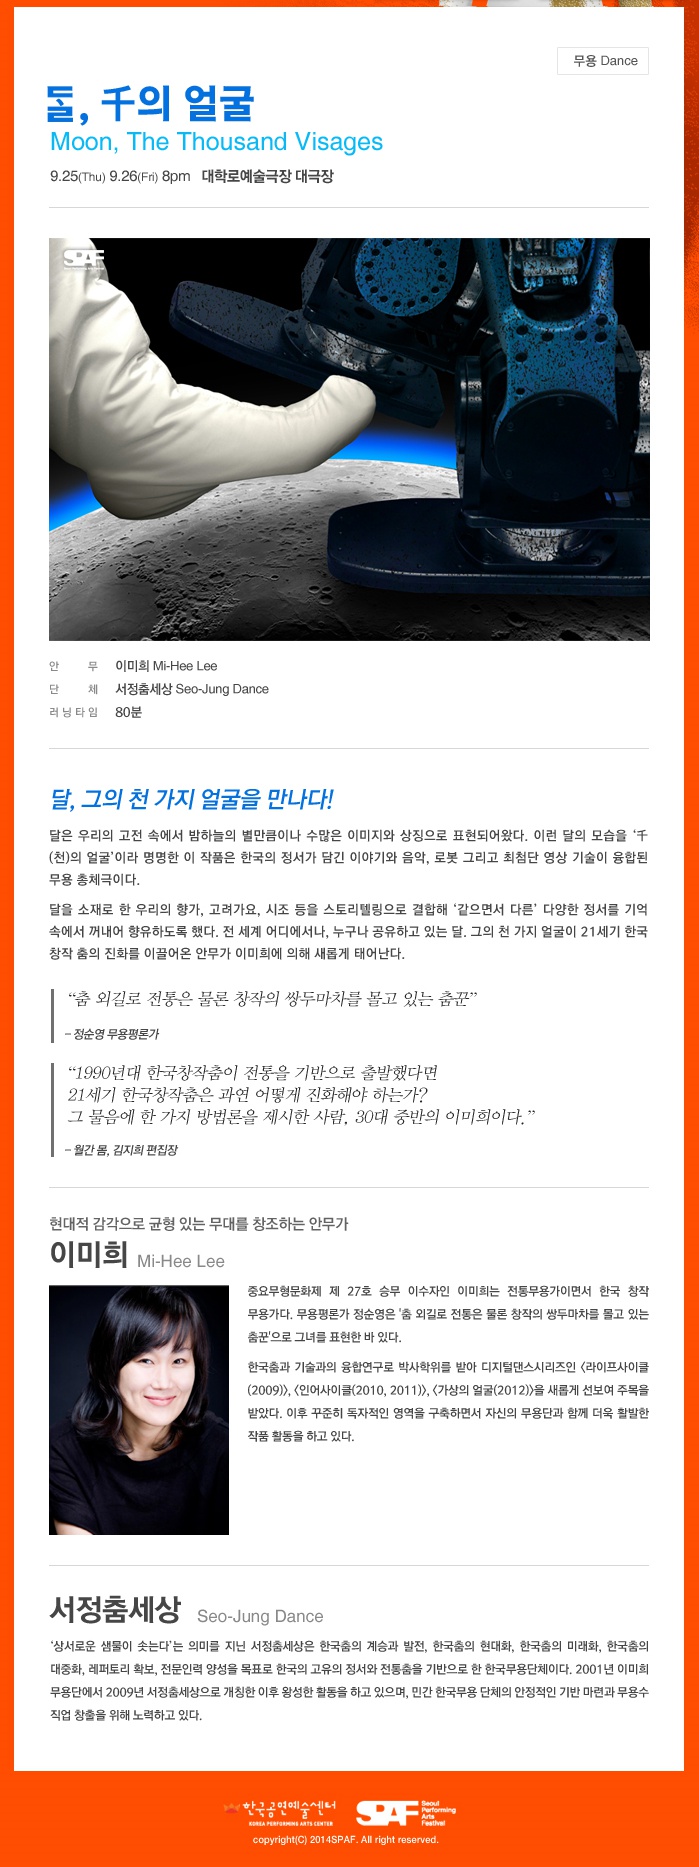 2014 서울국제공연예술제 - 달, 천의얼굴2.jpg